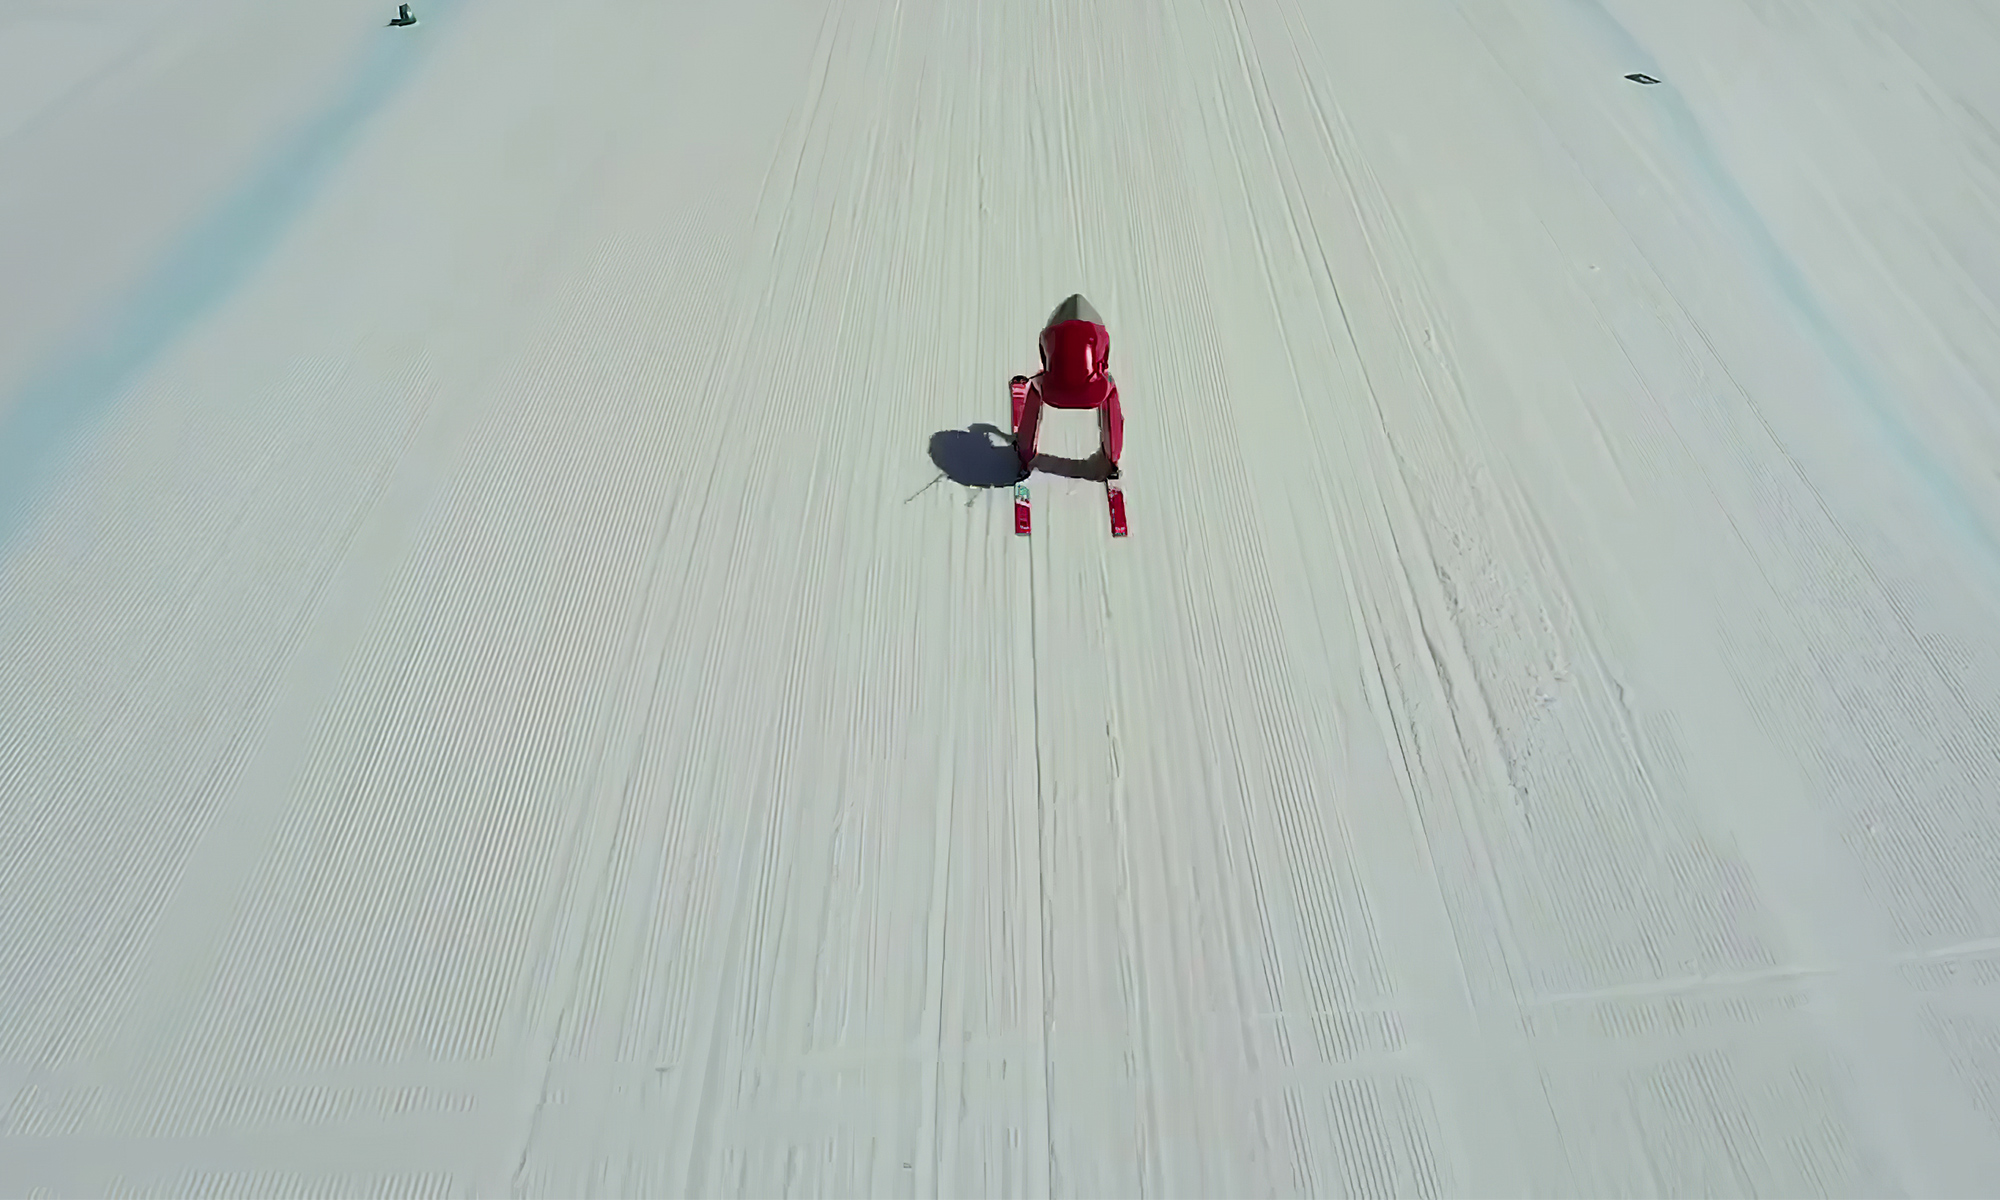 Ski de vitesse